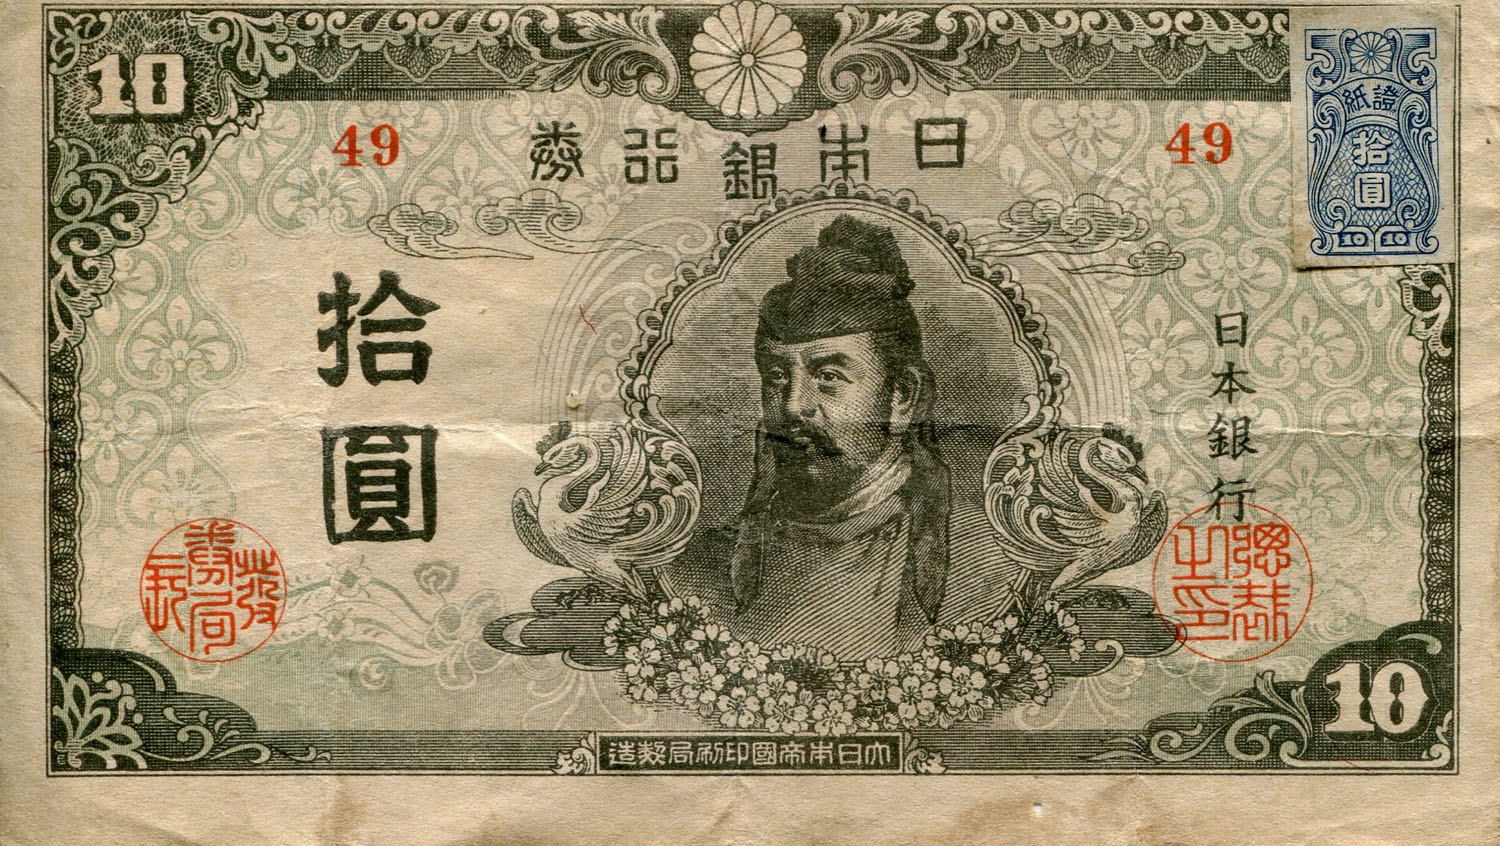 Billet japonais de 10 yens série 49 surchargé par un timbre de 10 yens - face